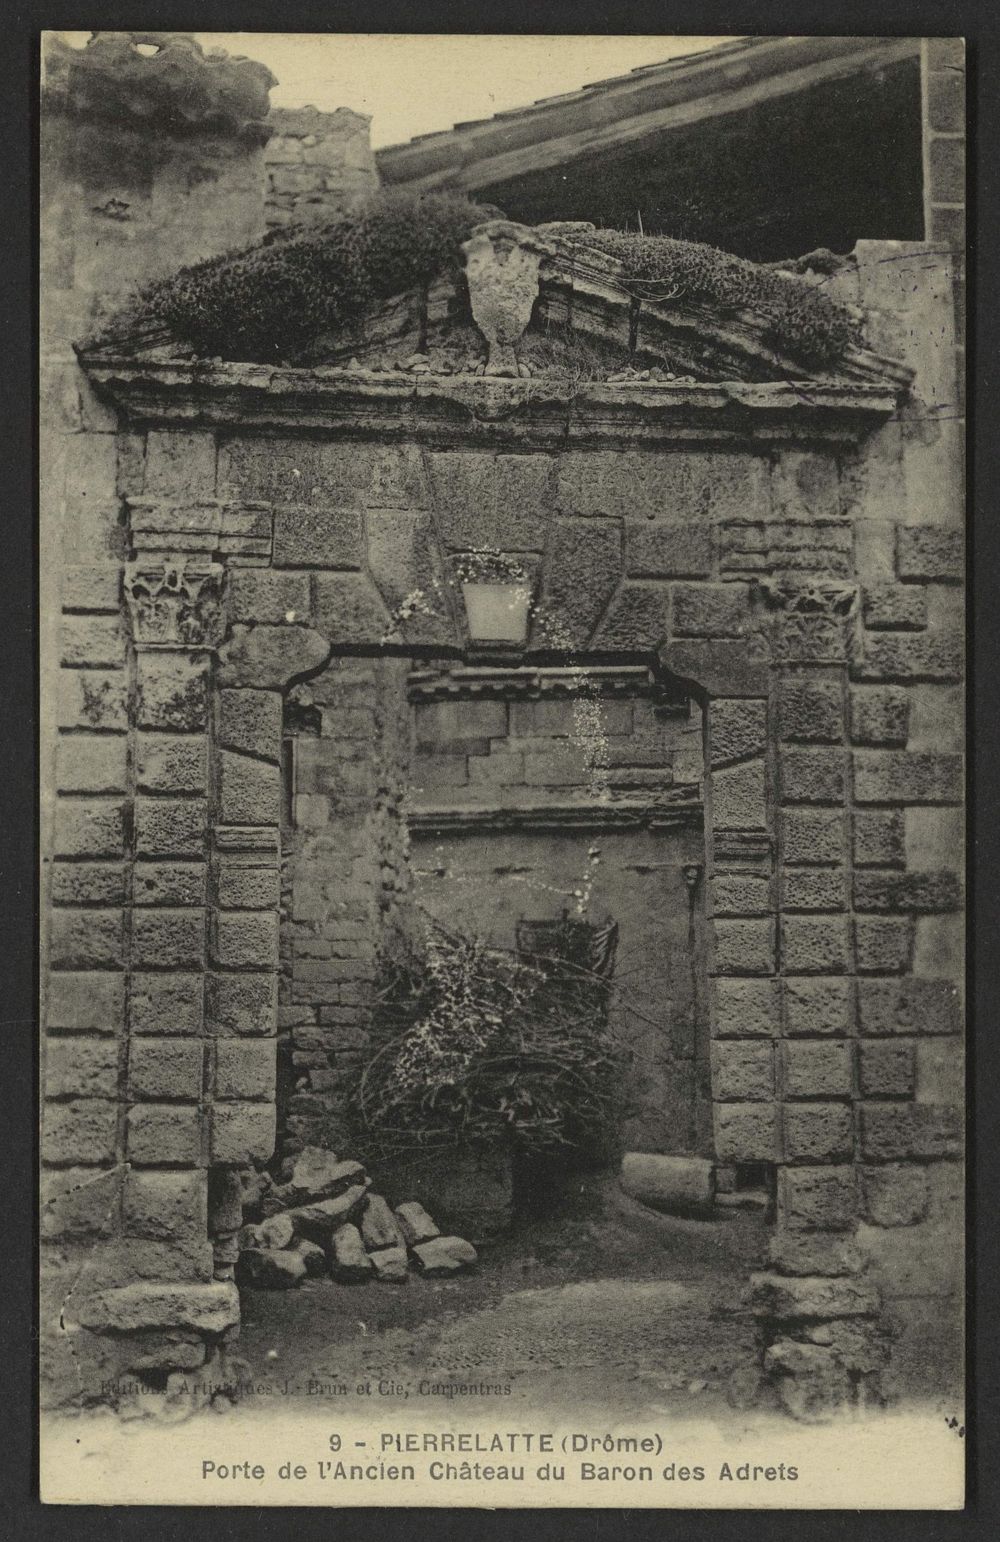 Pierrelatte (Drôme) - Porte de l'Ancien Château du Baron des Adrets